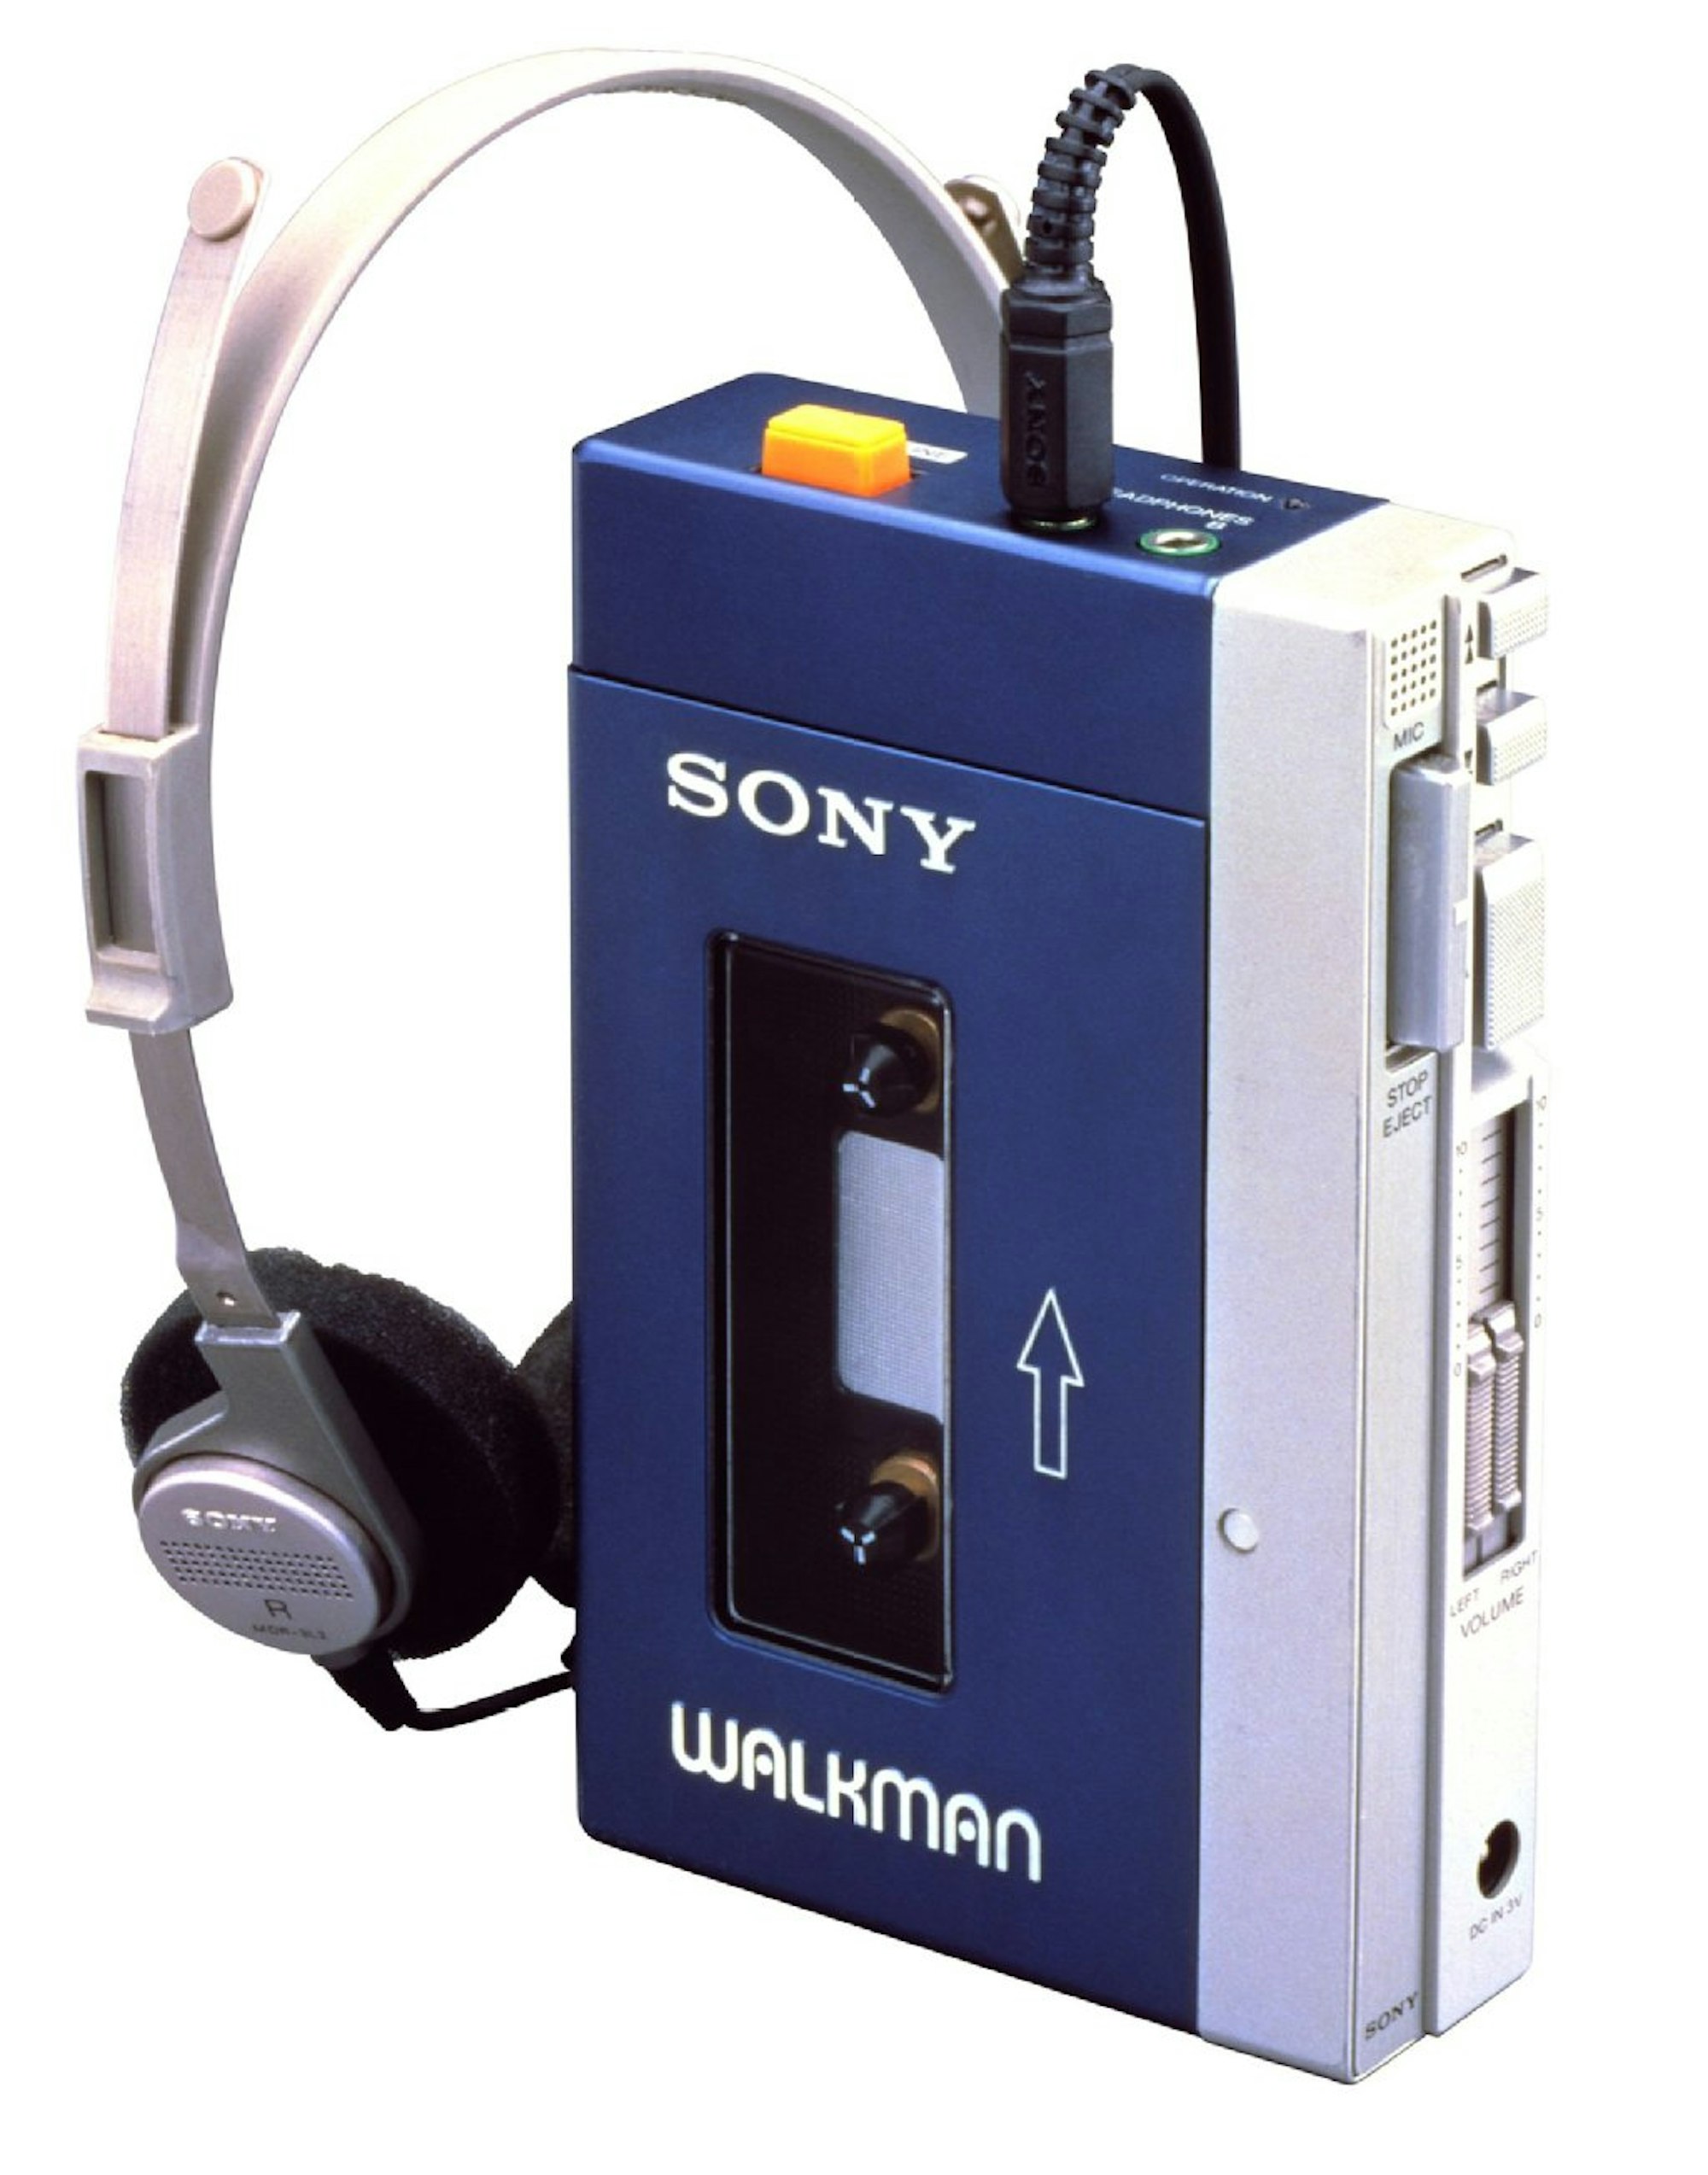 Walkman von Sony